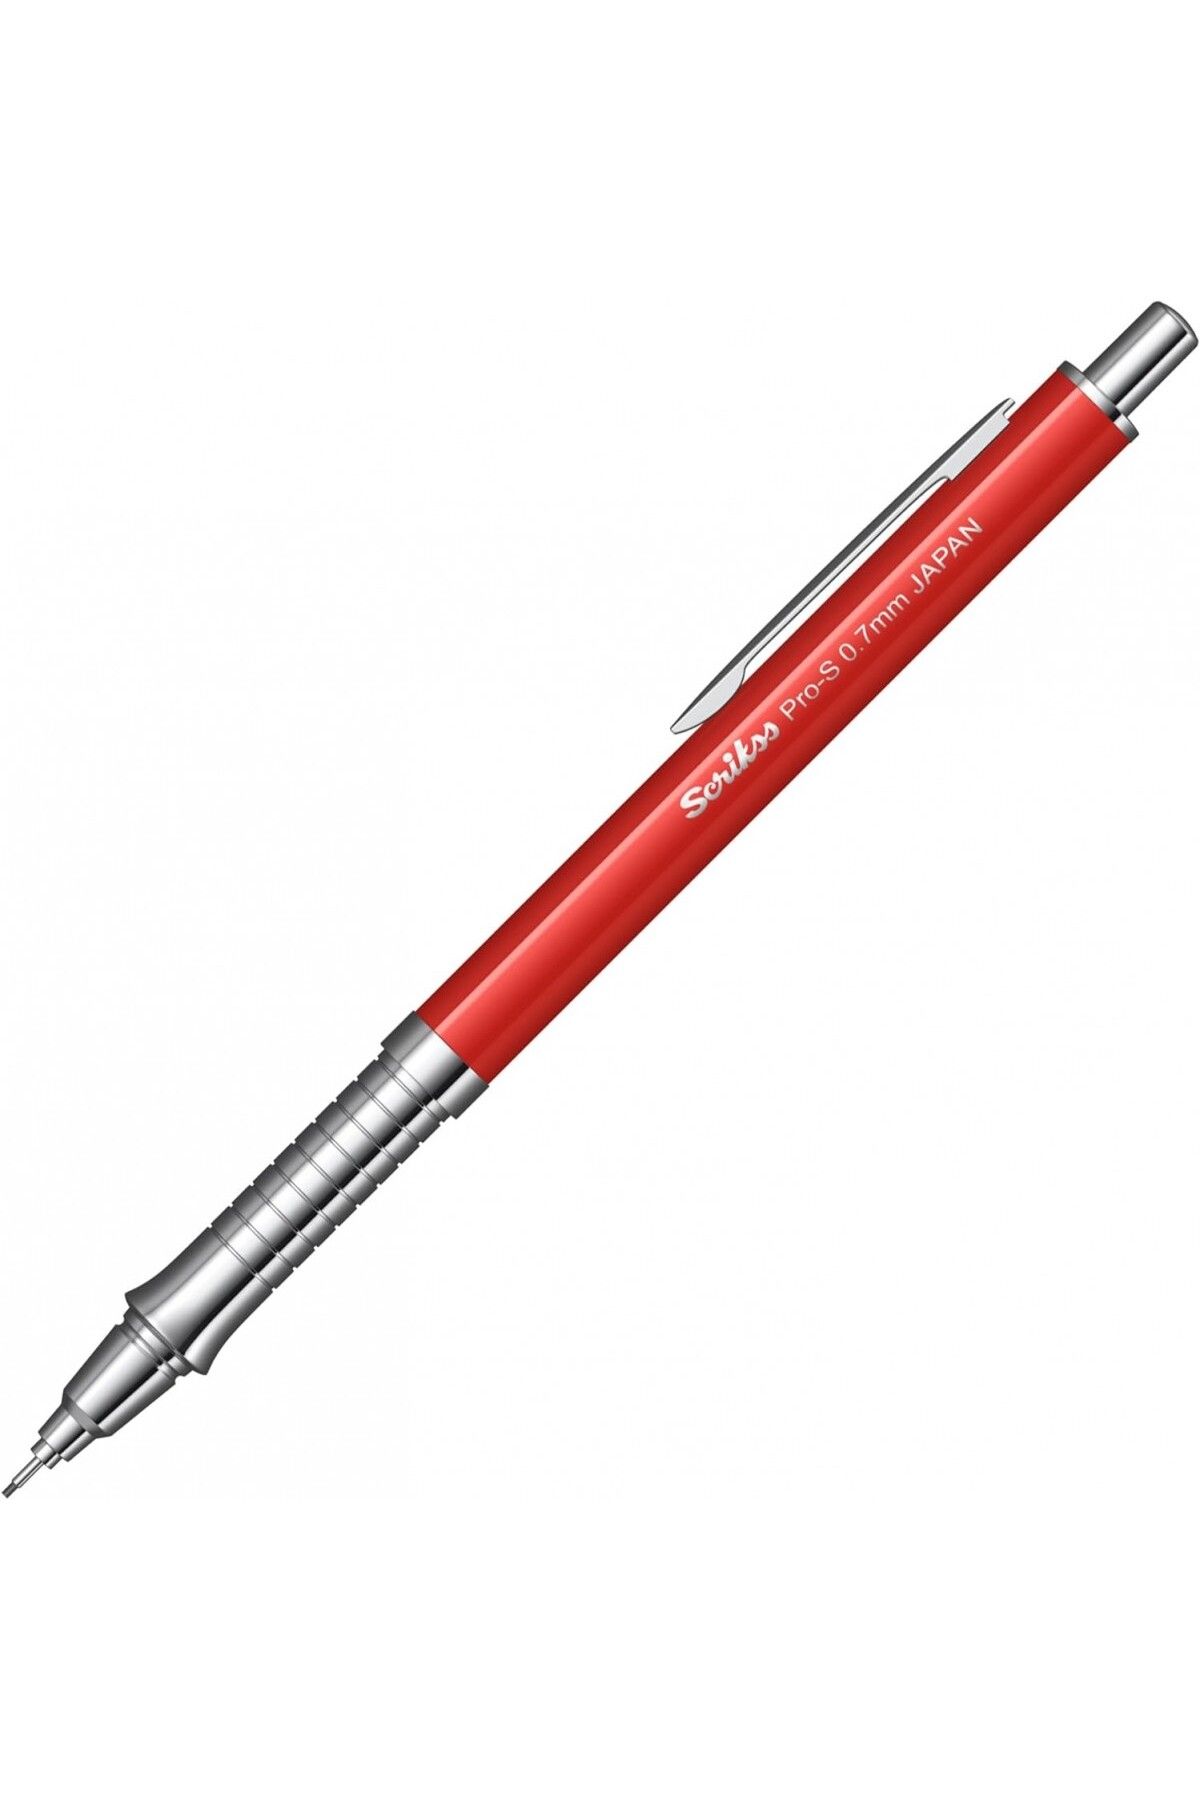 Scrikss Pro-s 0.7mm Mekanik Kurşun Kalem Kırmızı /